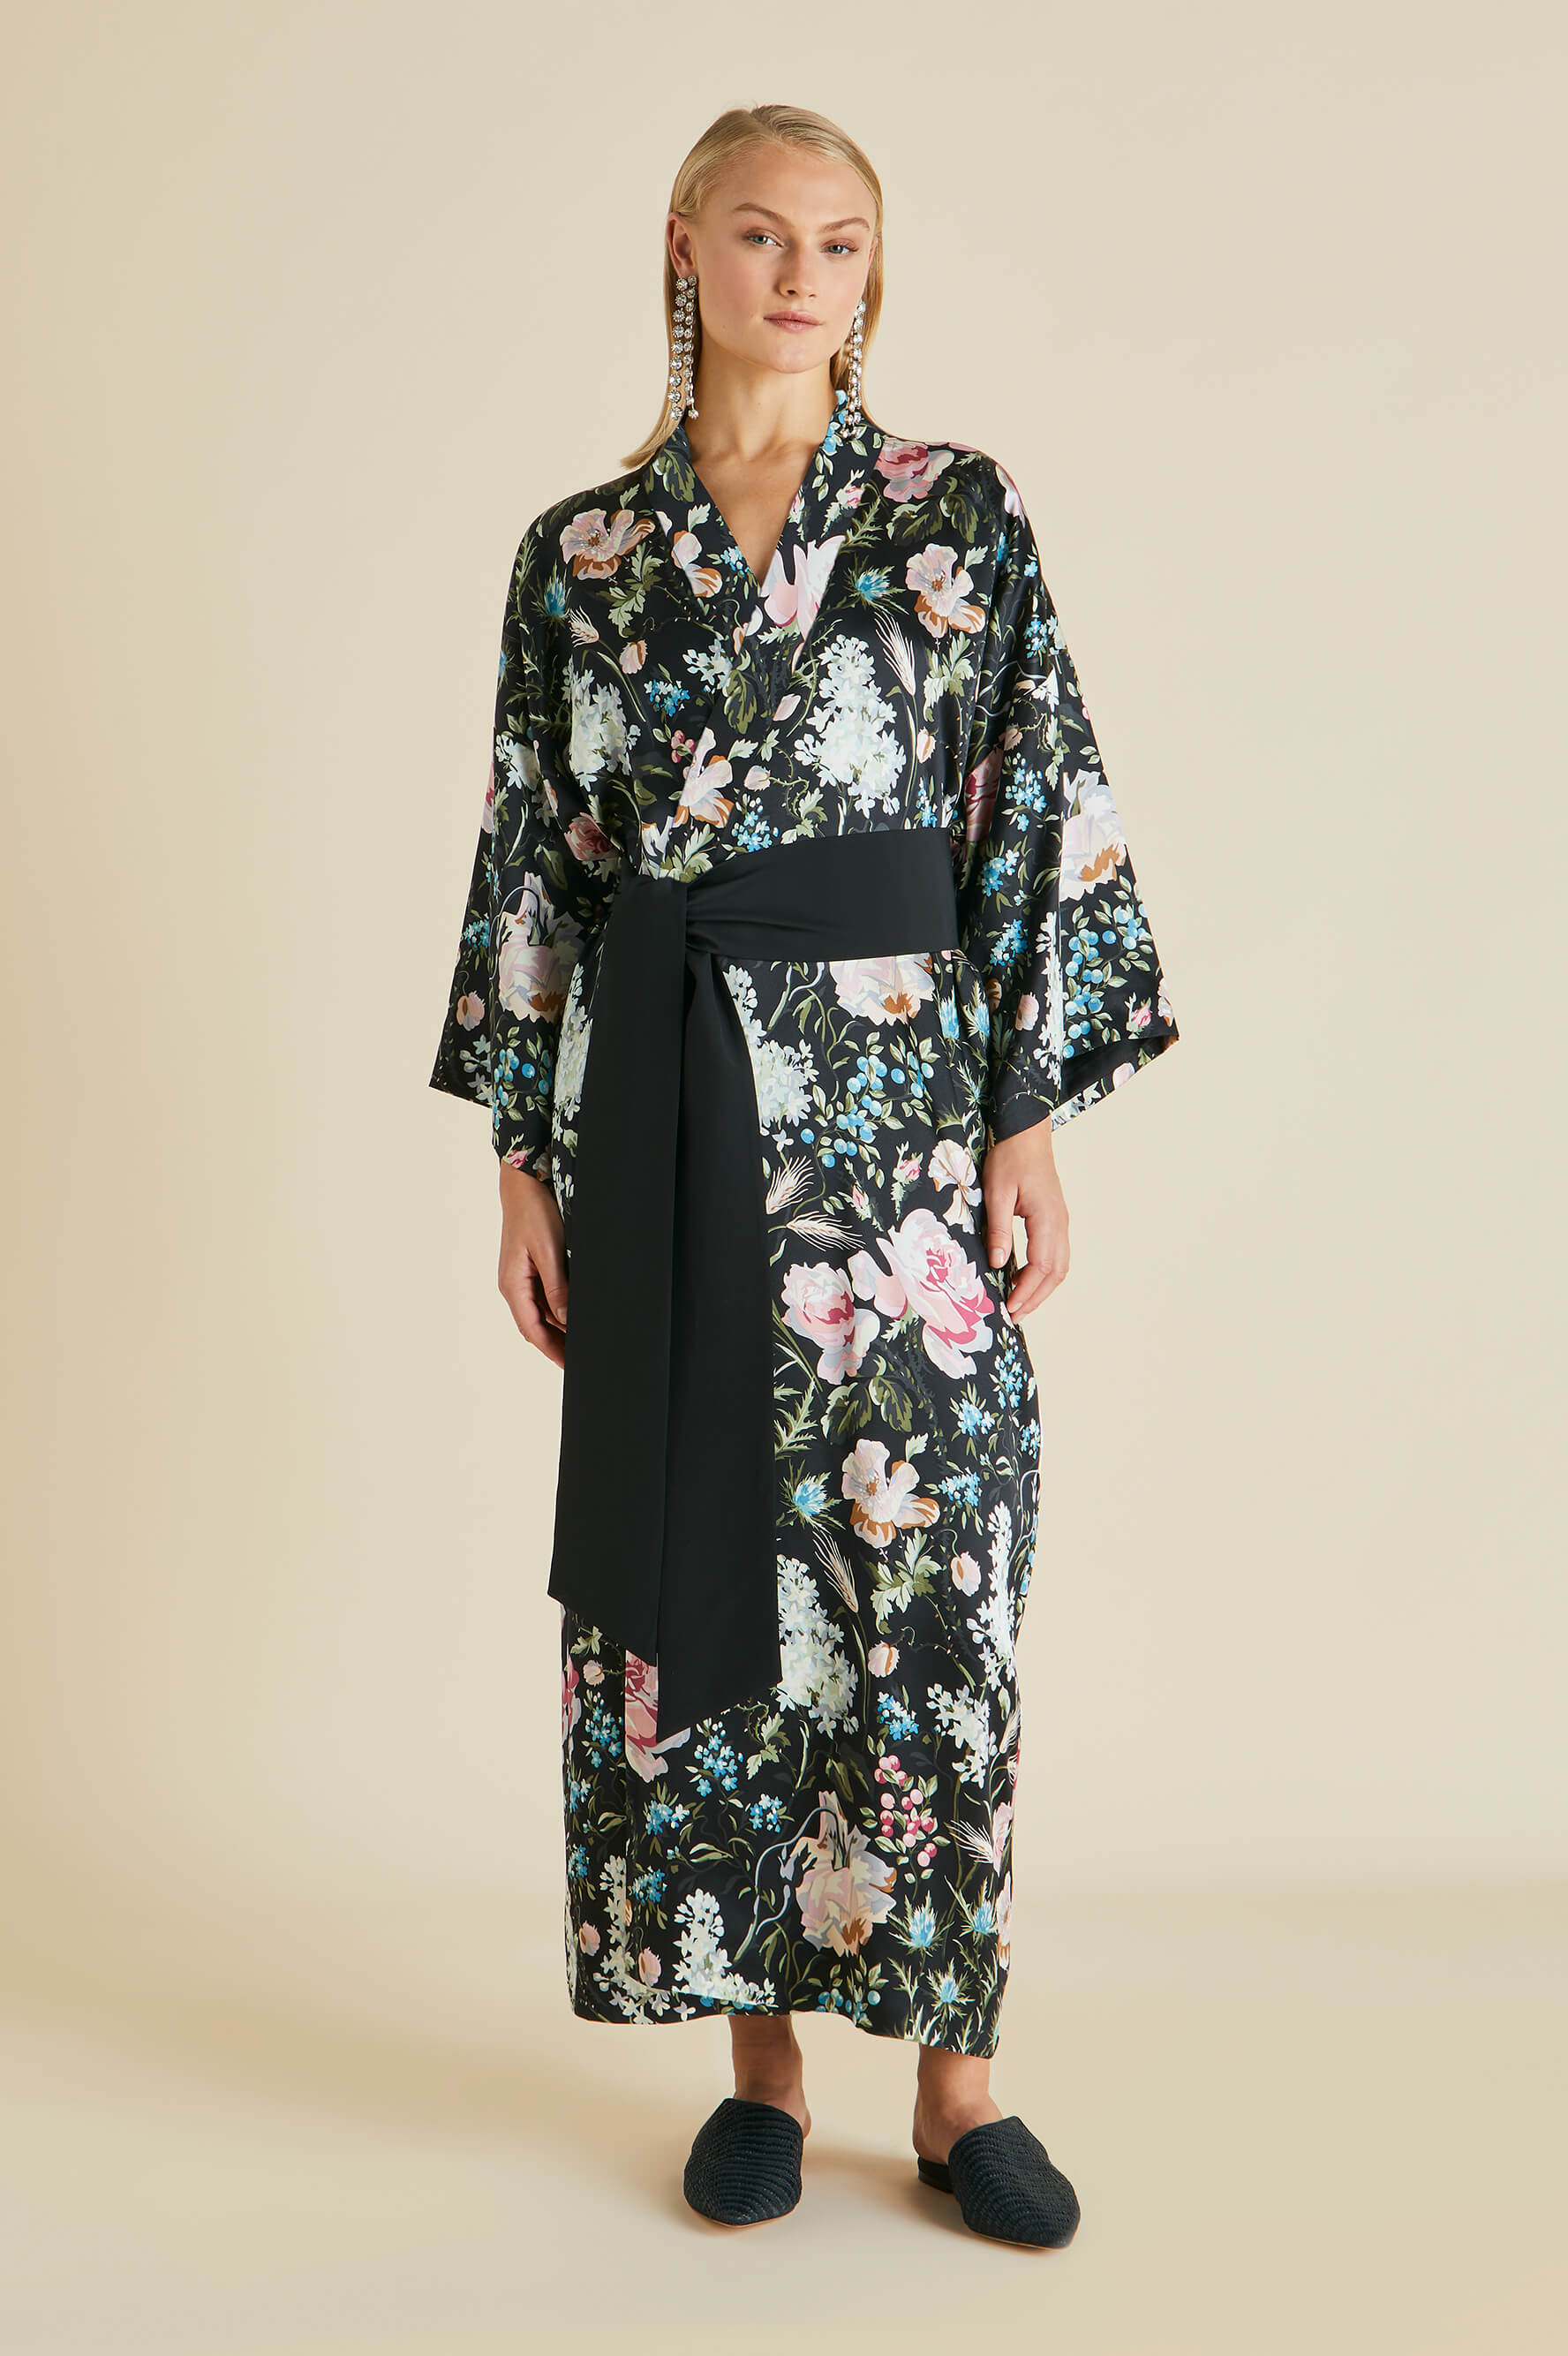 Queenie Esme Black Floral Robe in Silk Satin